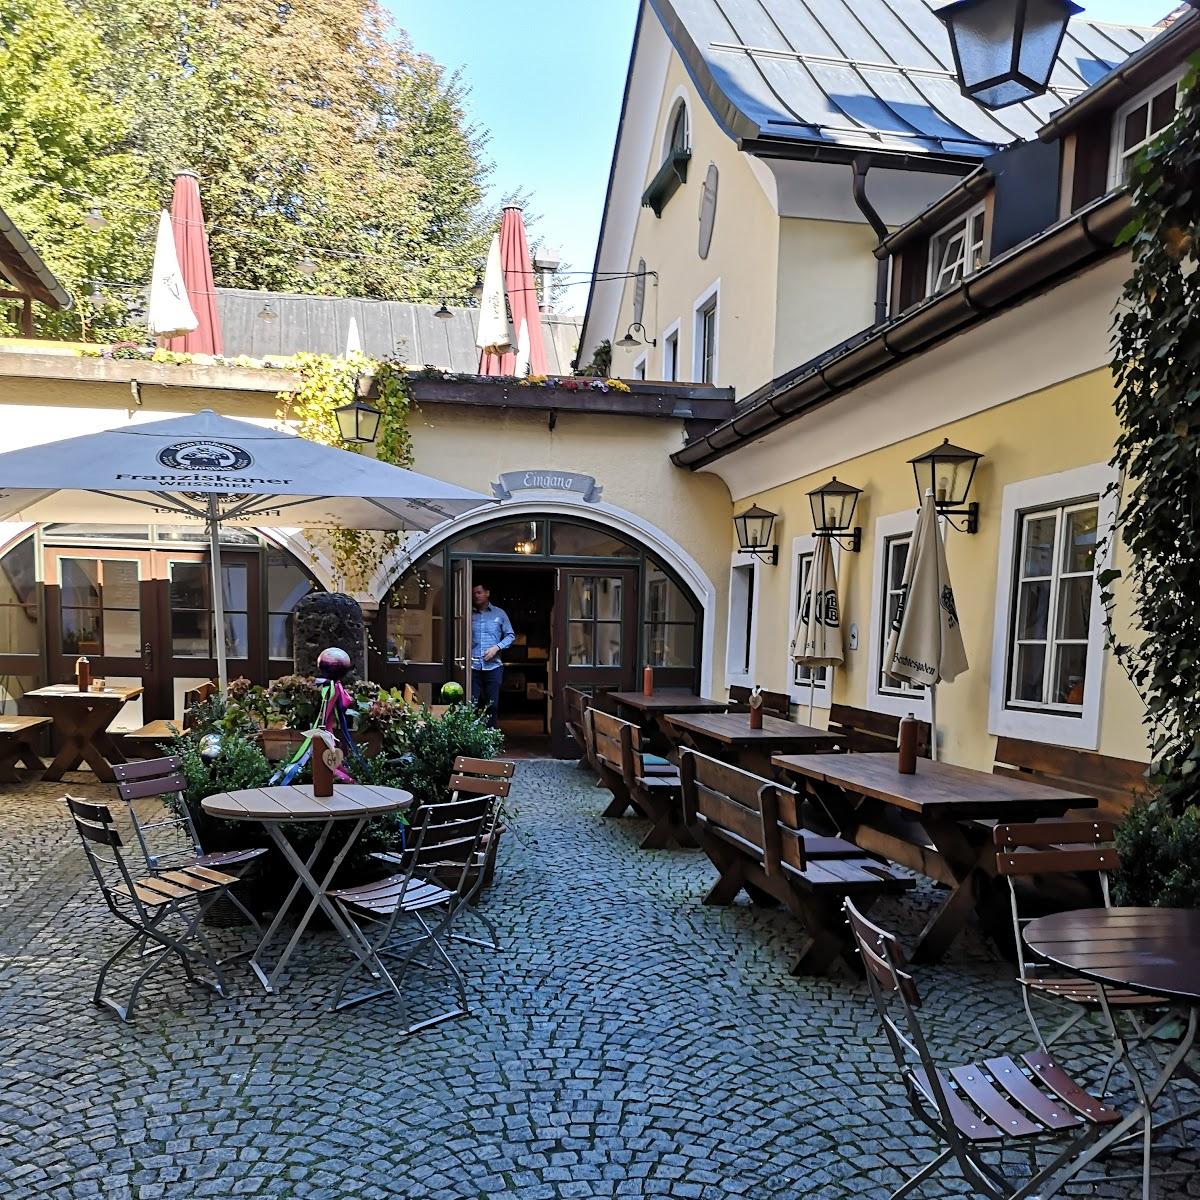 Restaurant "Hofbrauhaus  GmbH" in Berchtesgaden